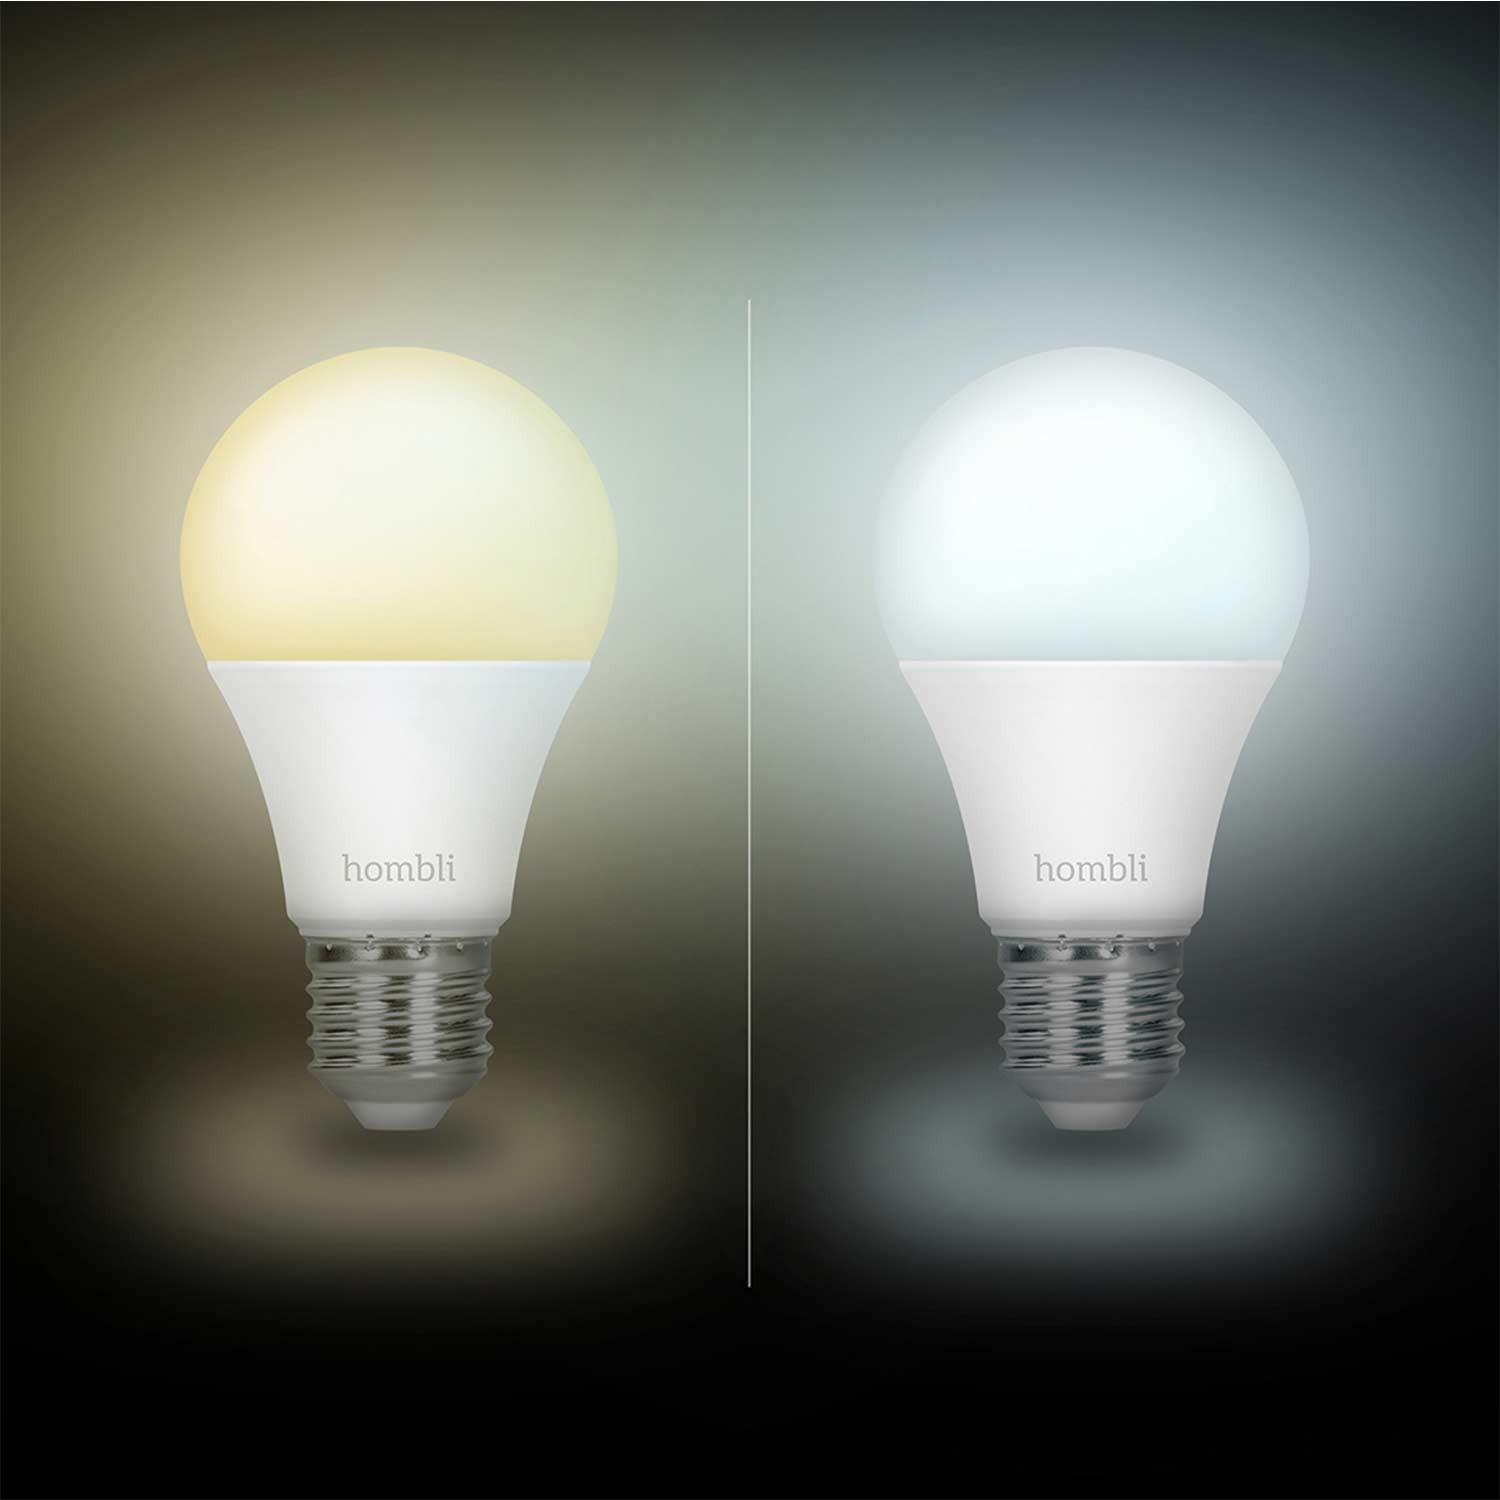 Hombli Smart Bulb E27 White-Lampe 3er-Set + gratis Smart Bulb E27 White 3er-Set - Ambient